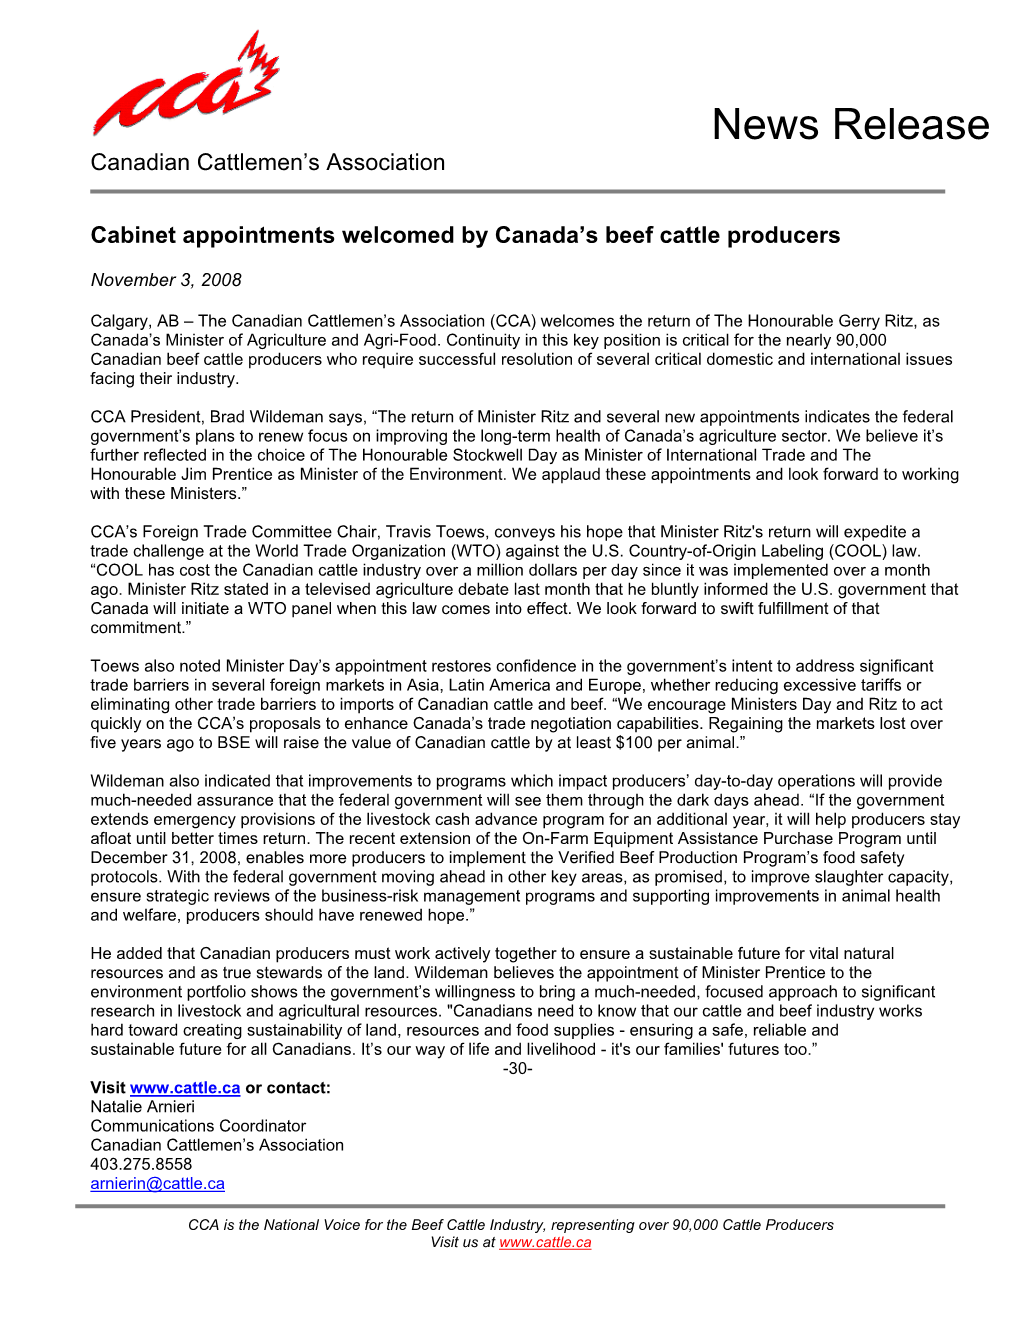 News Release Canadian Cattlemen’S Association